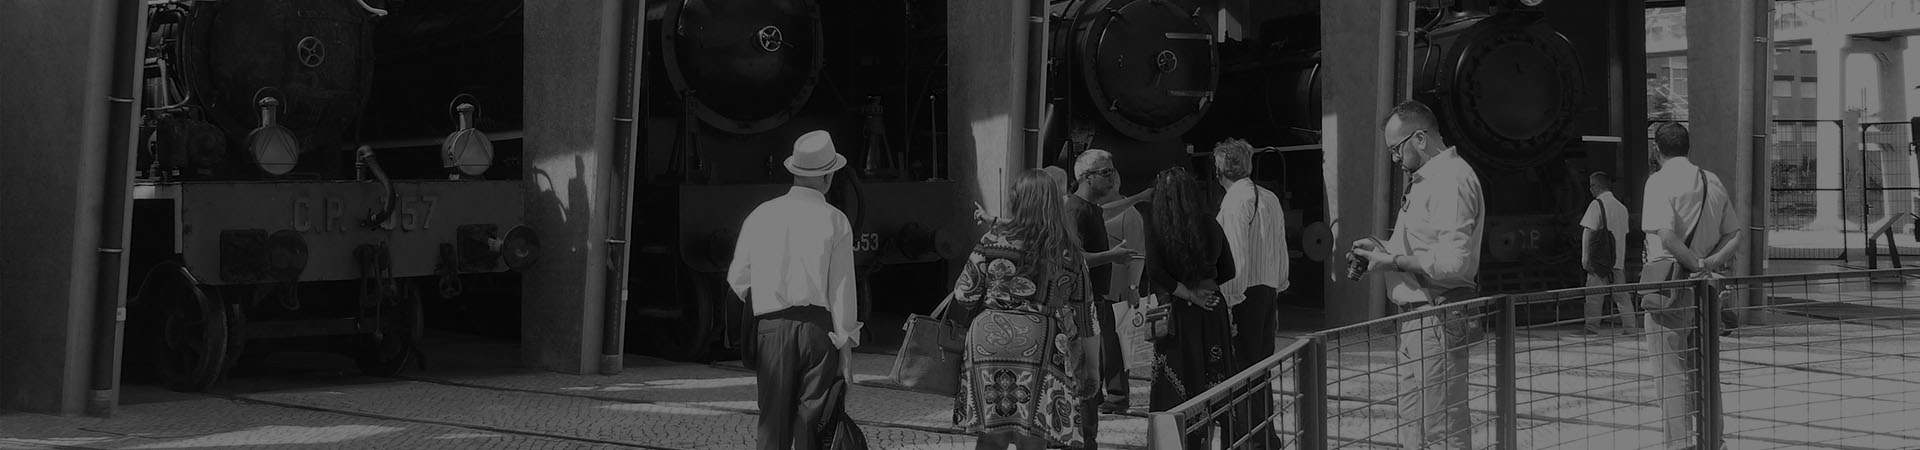 Fotografía de un grupo de visitantes en la locomotora de juguete La Liliputienne